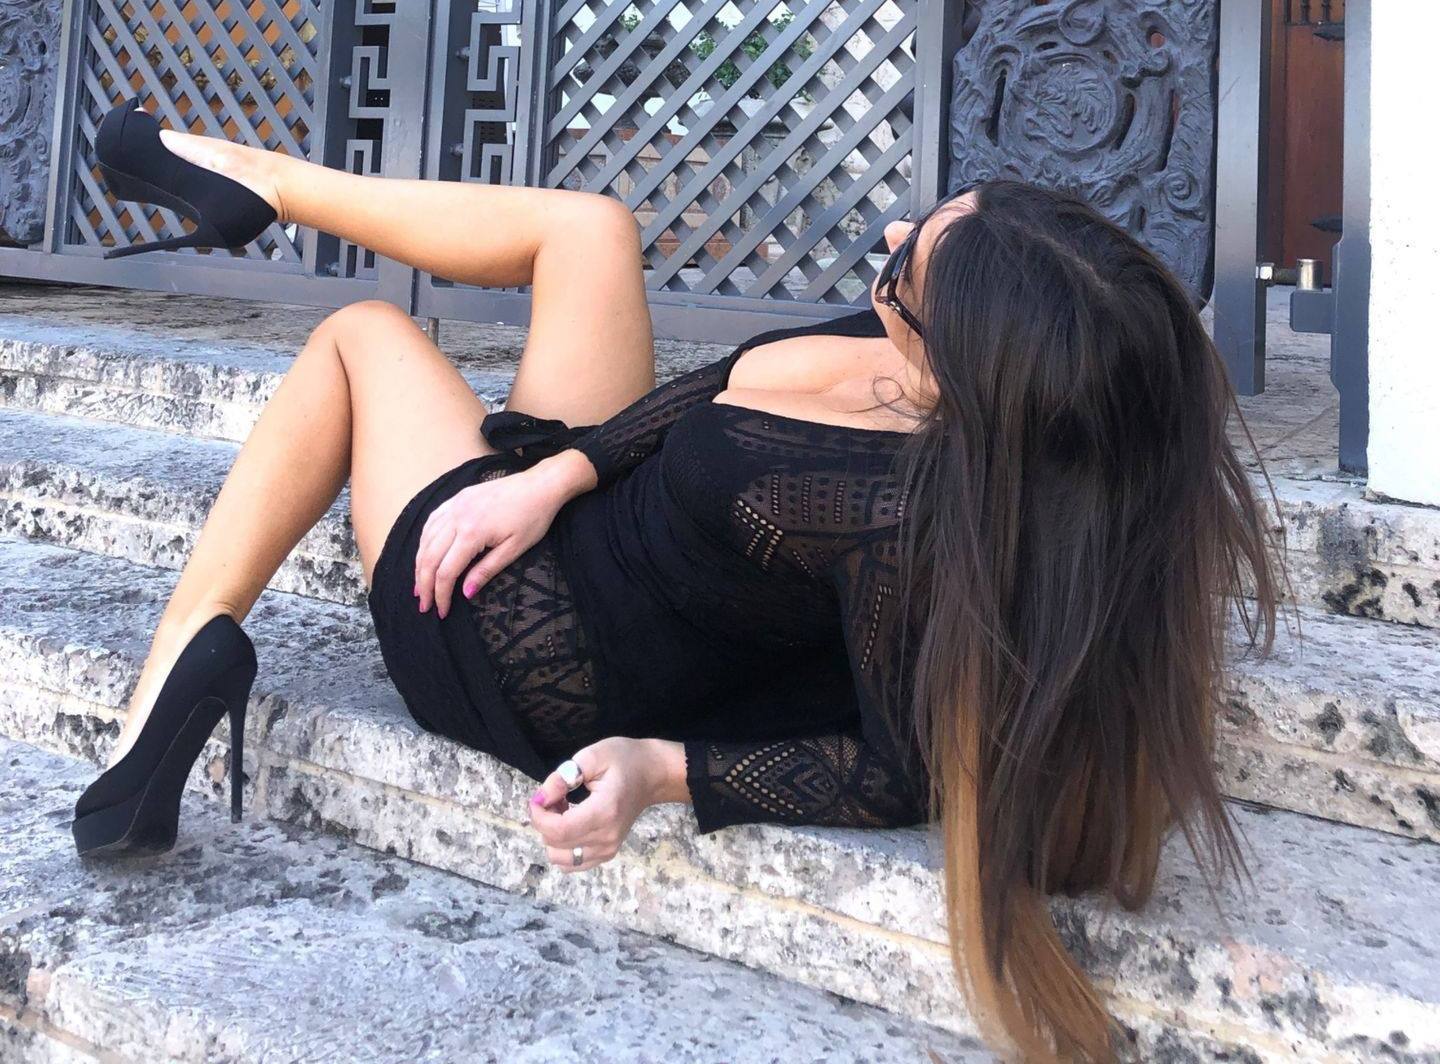 Claudia Romani – Sexy Legs And Big Boobs In Beautiful Black Dress 0001